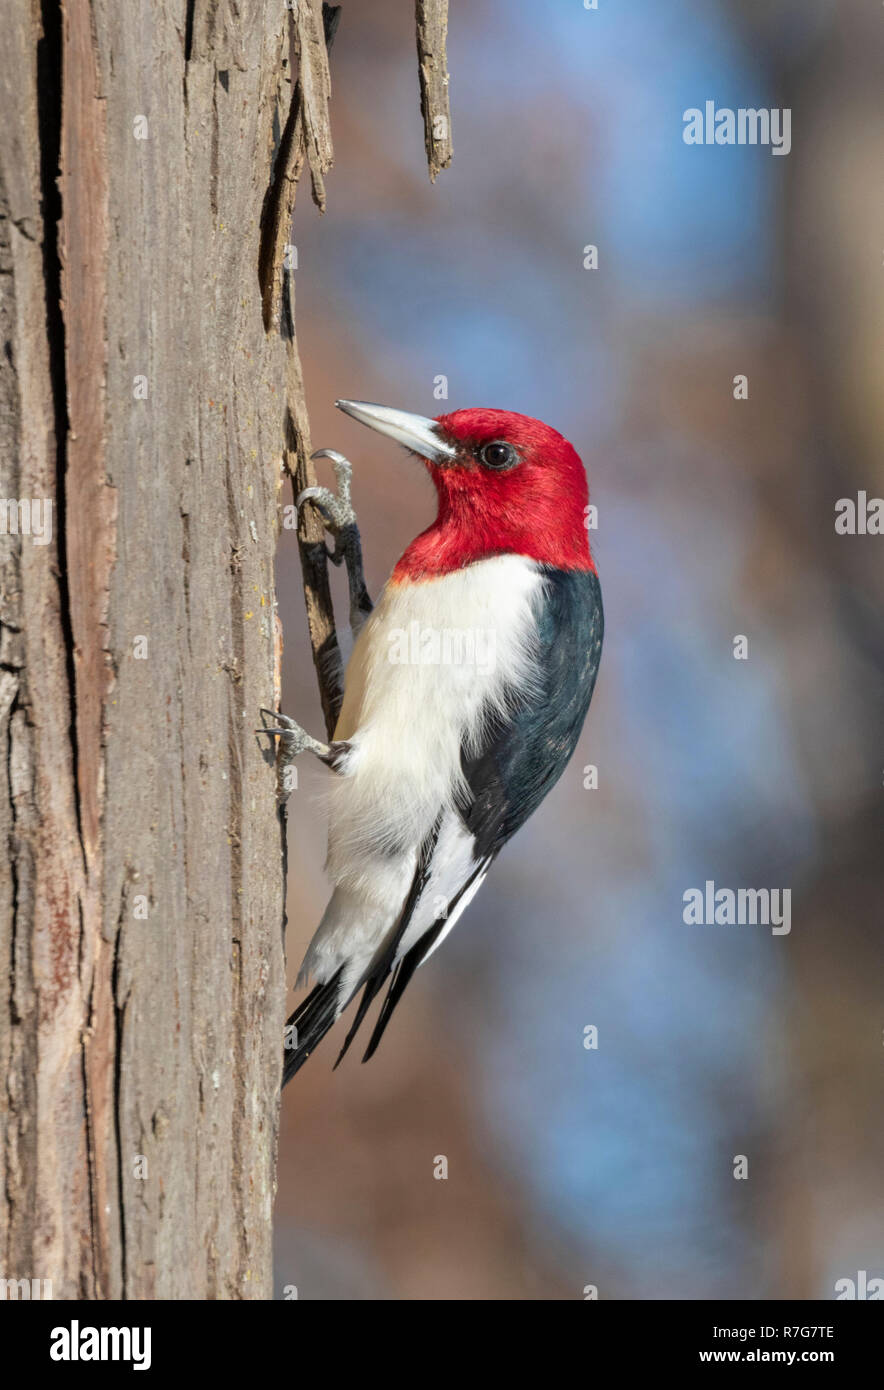 Pájaro carpintero de cabeza roja (Melanerpes erythrocephalus) adulto alimentándose en el tronco de un árbol en invierno, Iowa, EE.UU. Foto de stock